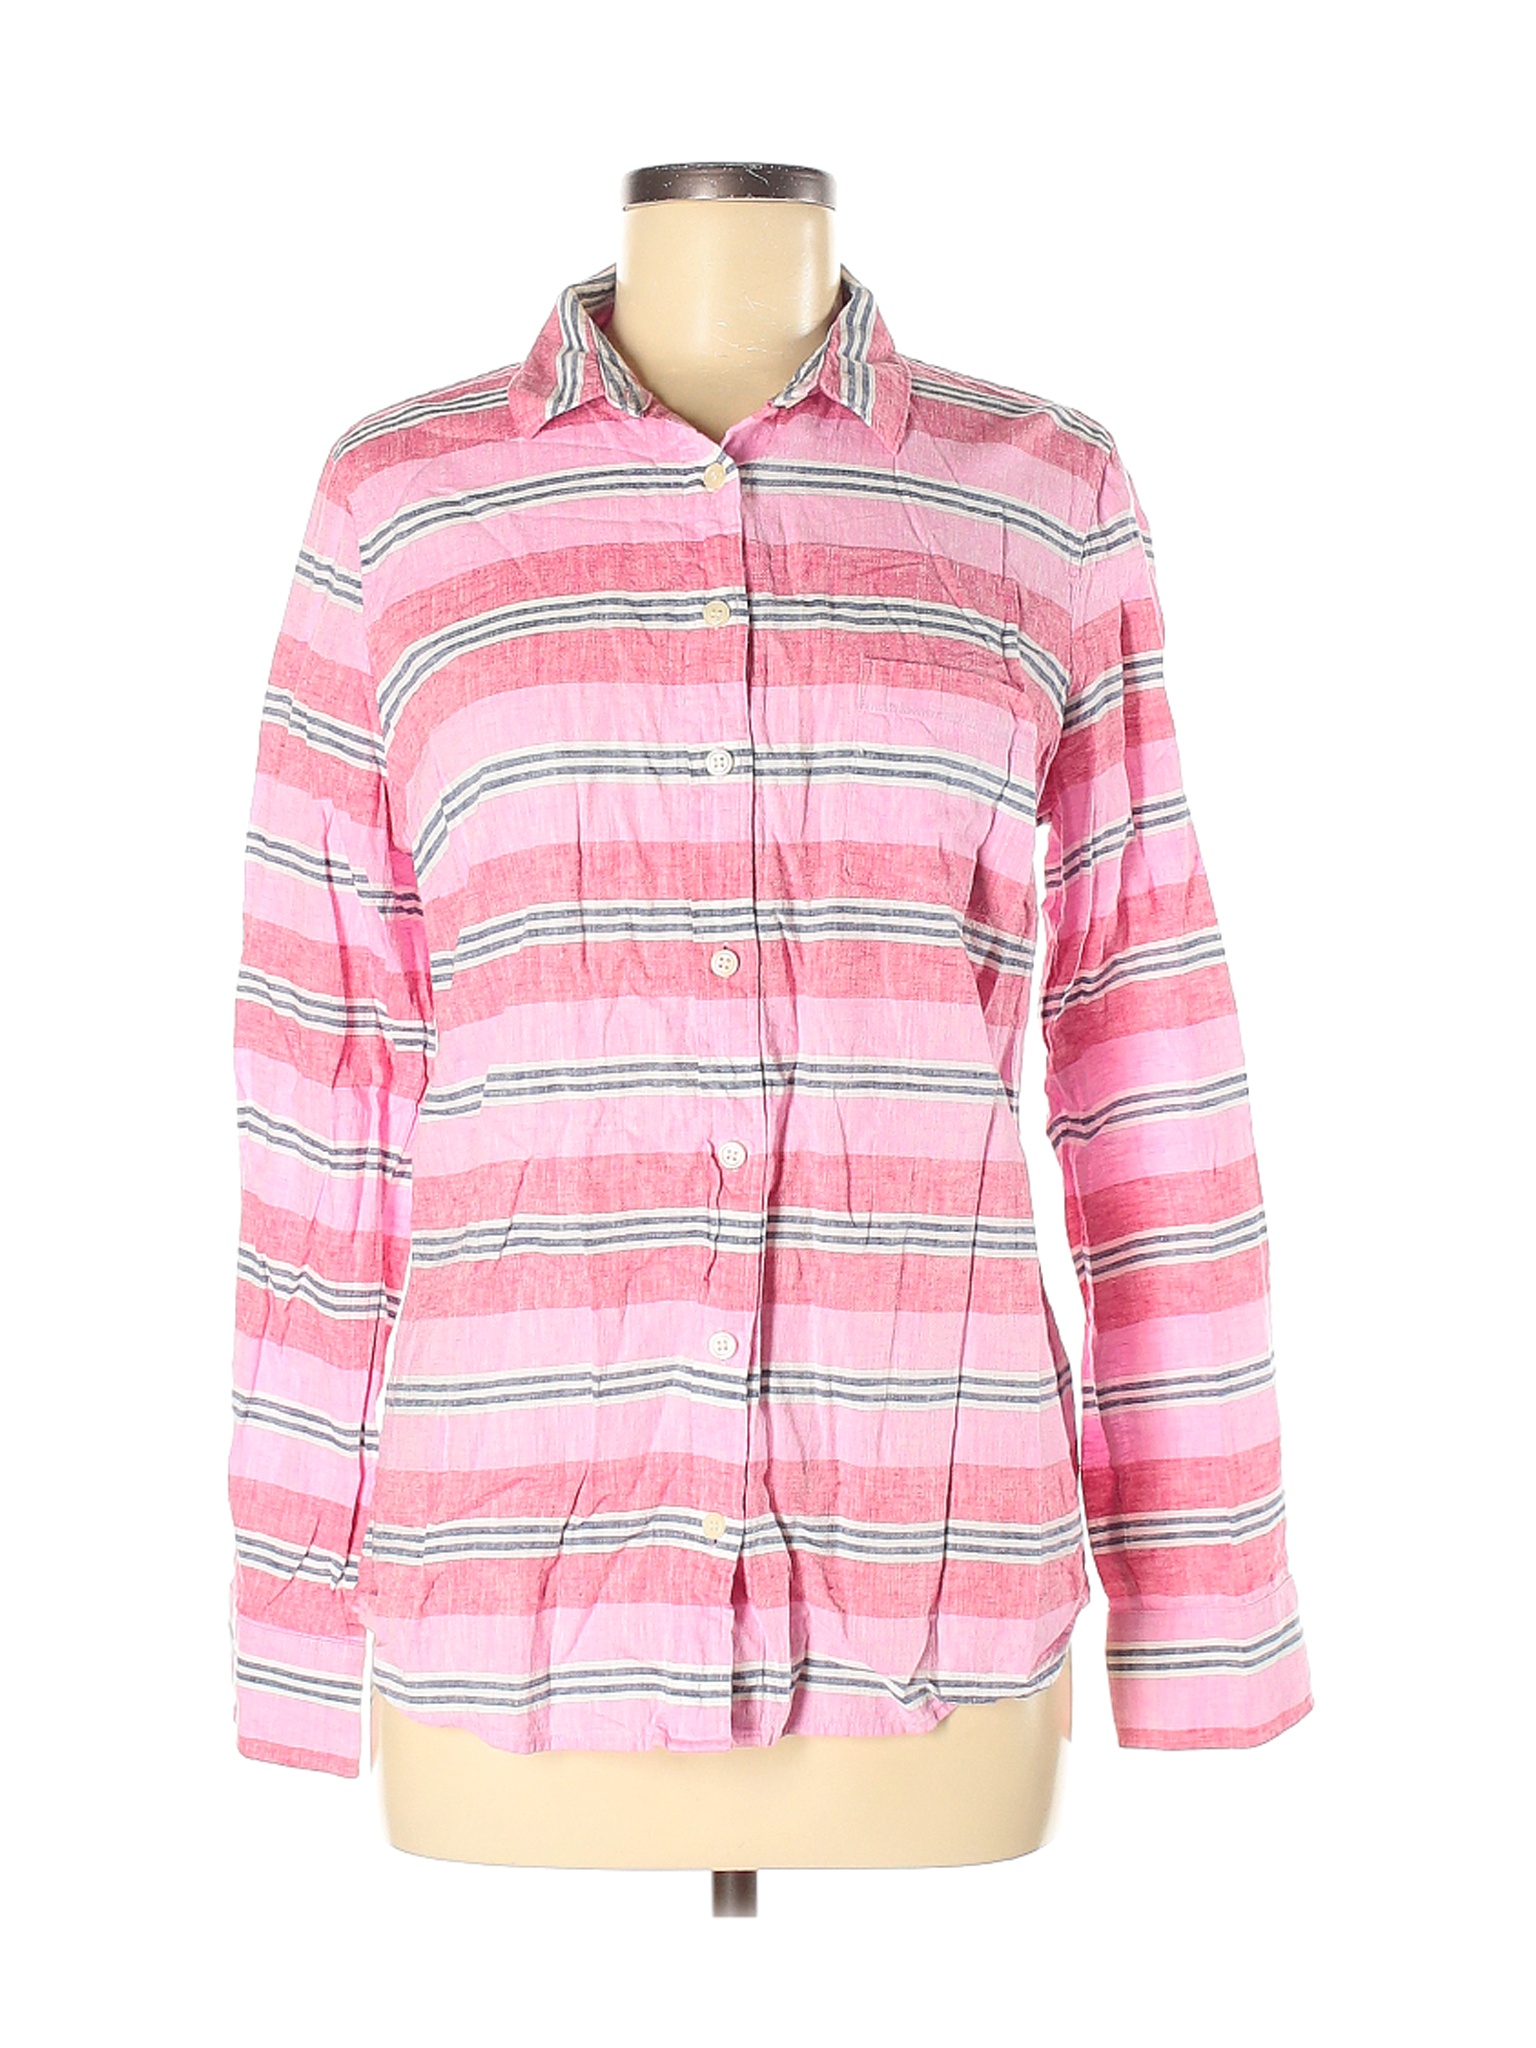 J.Crew Women Pink Long Sleeve Button-Down Shirt M | eBay